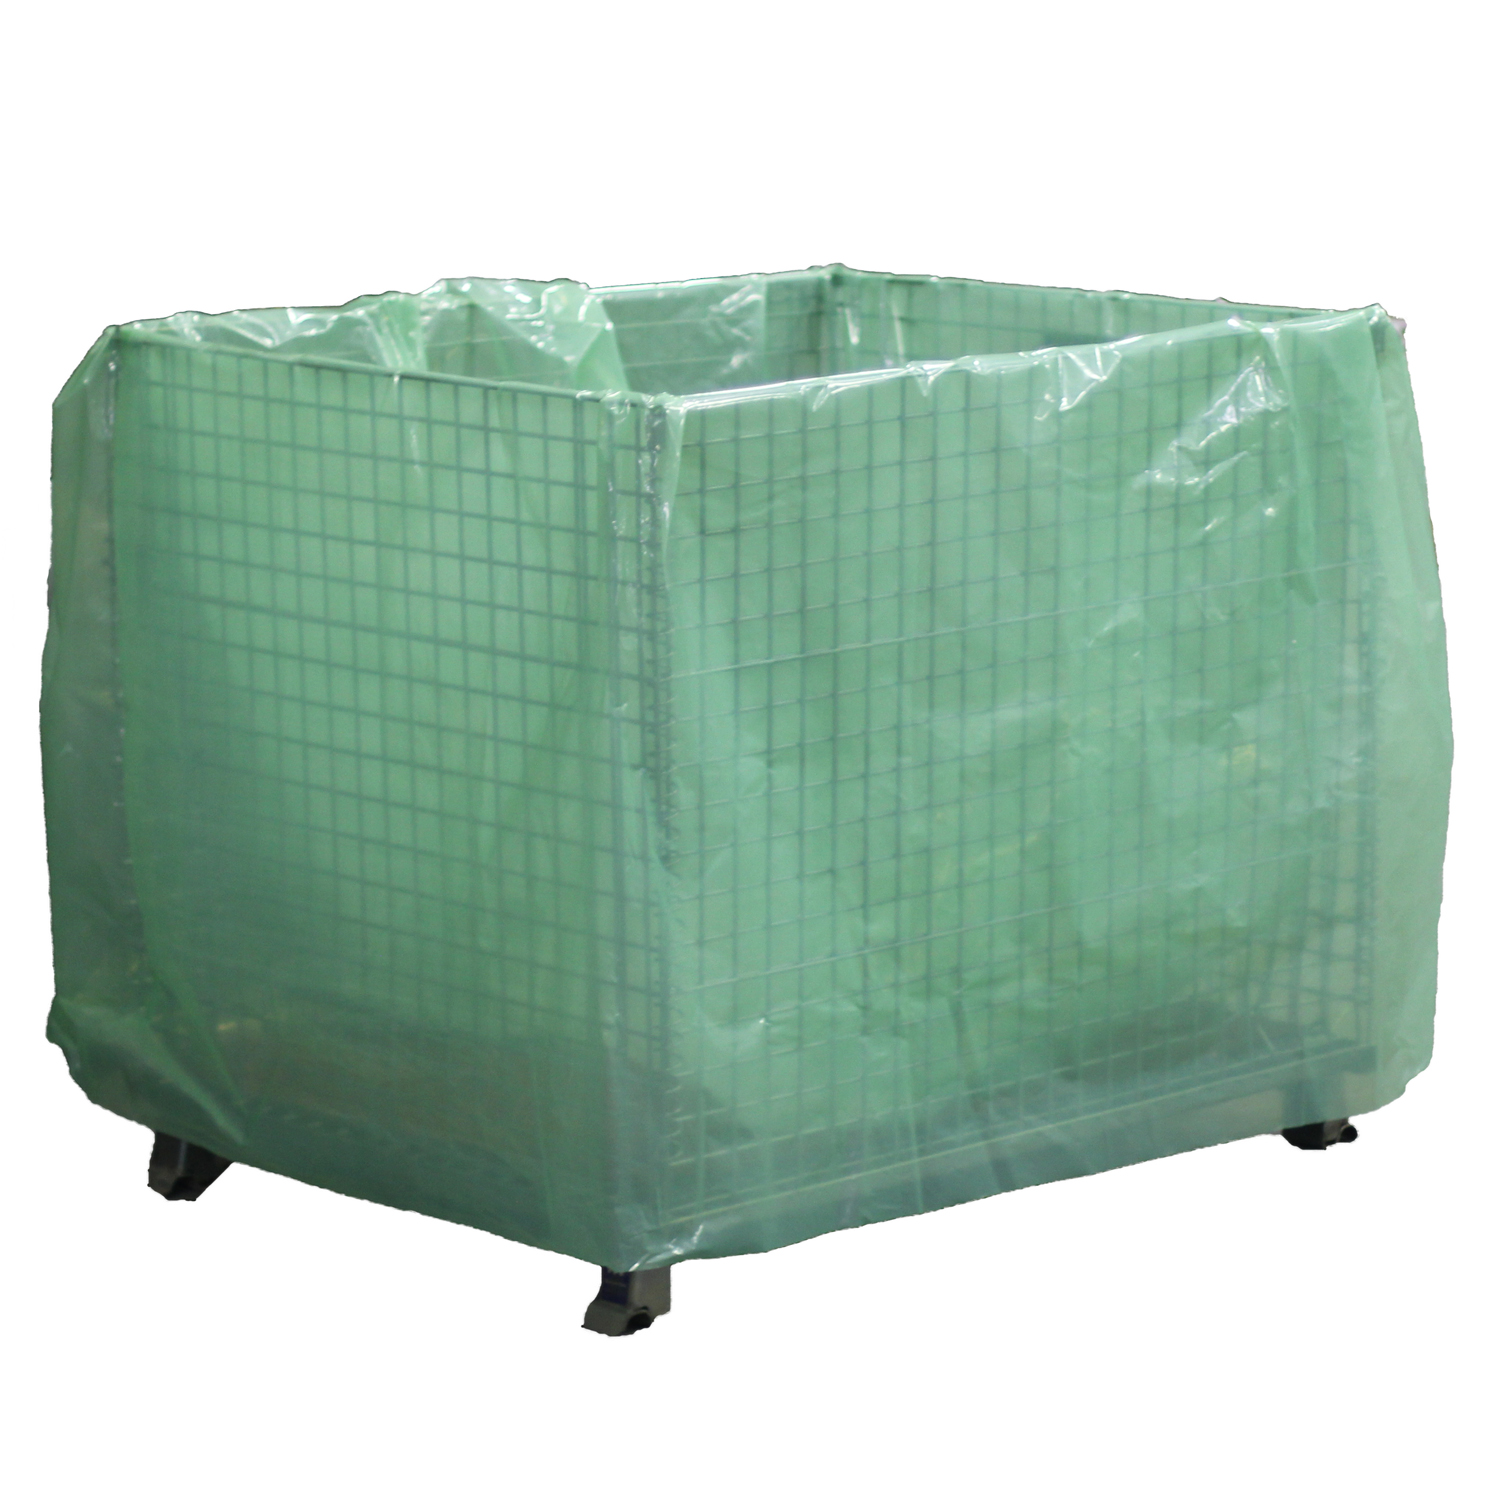 Mil Multimetal Green Bag Gusset Type